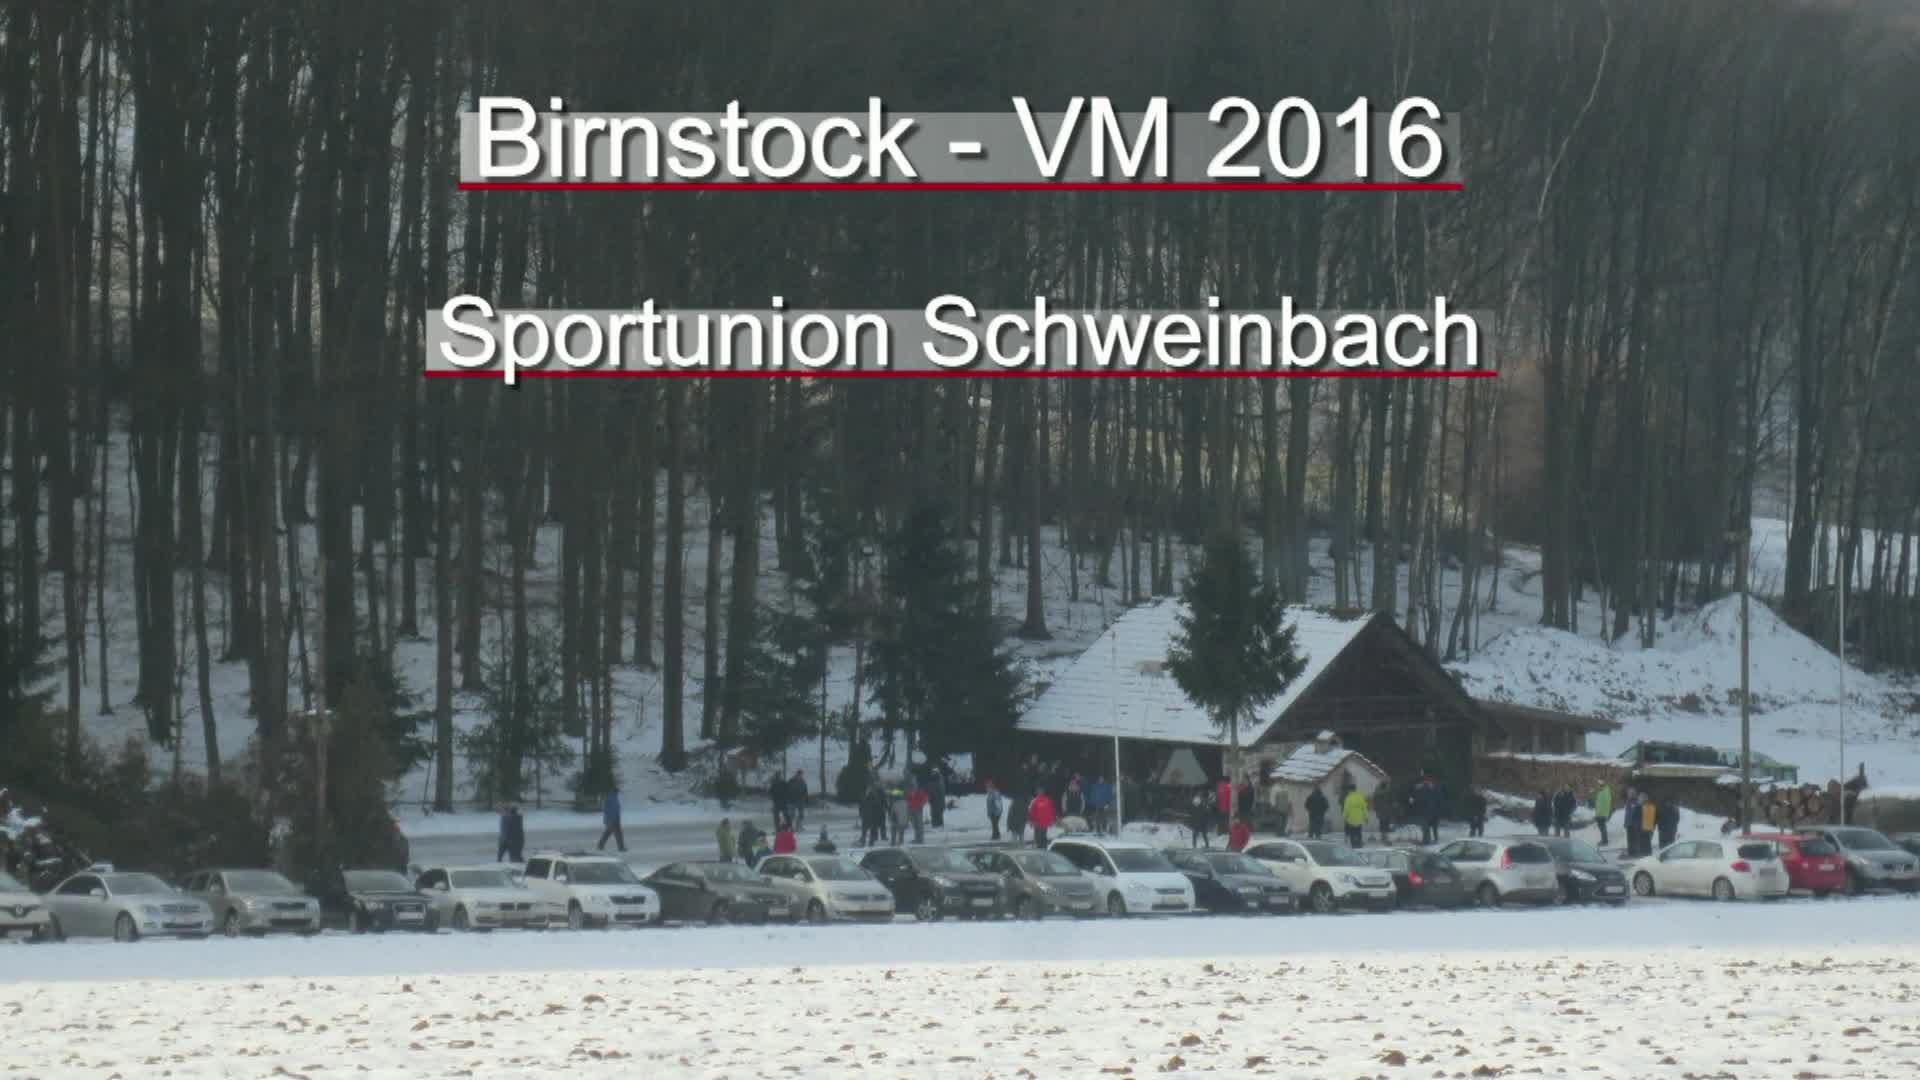 Birnstock- VM 2016 Sportunion Schweinbach